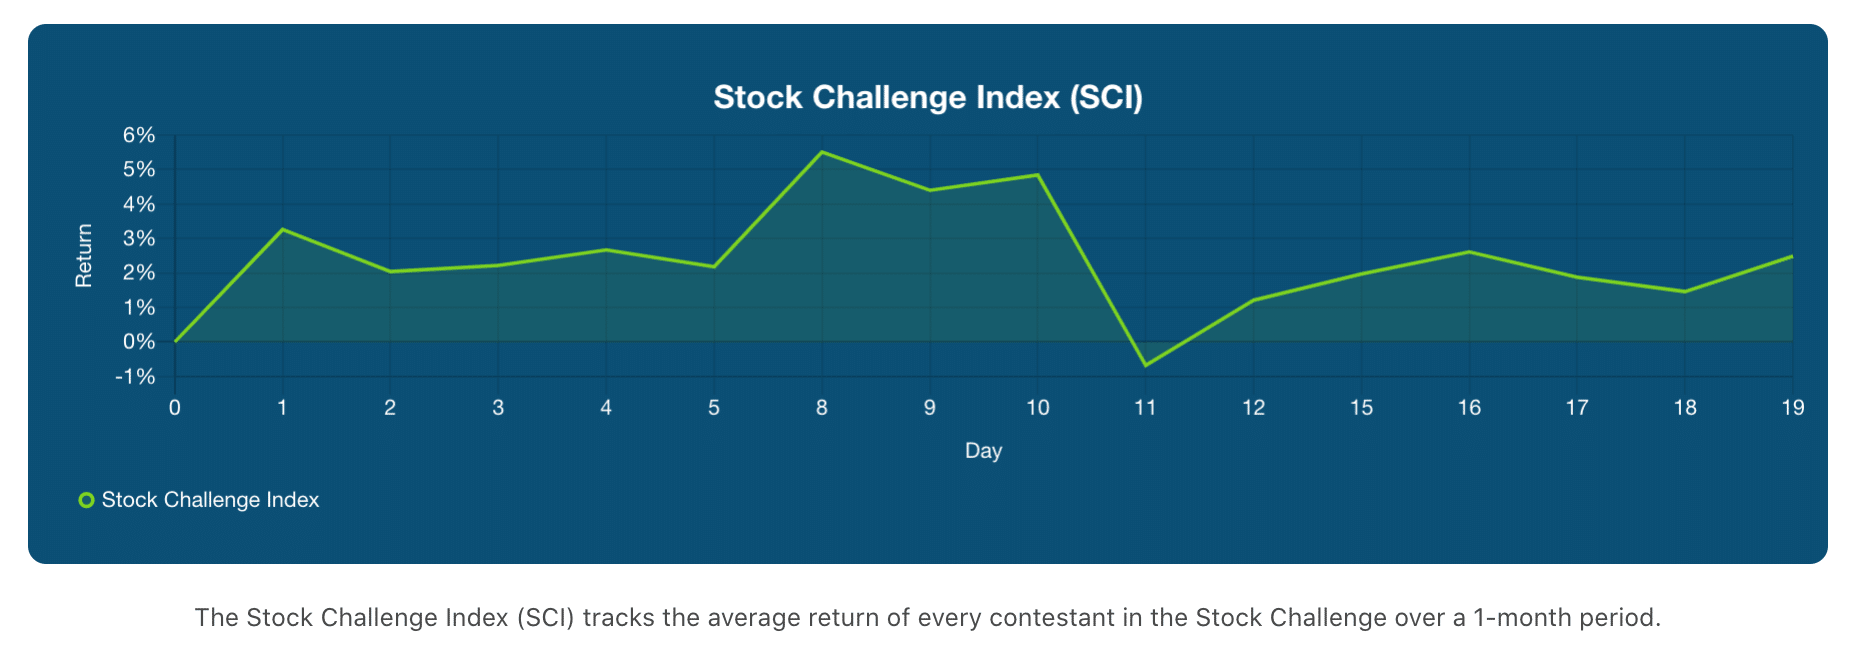 stock challenge index week 3